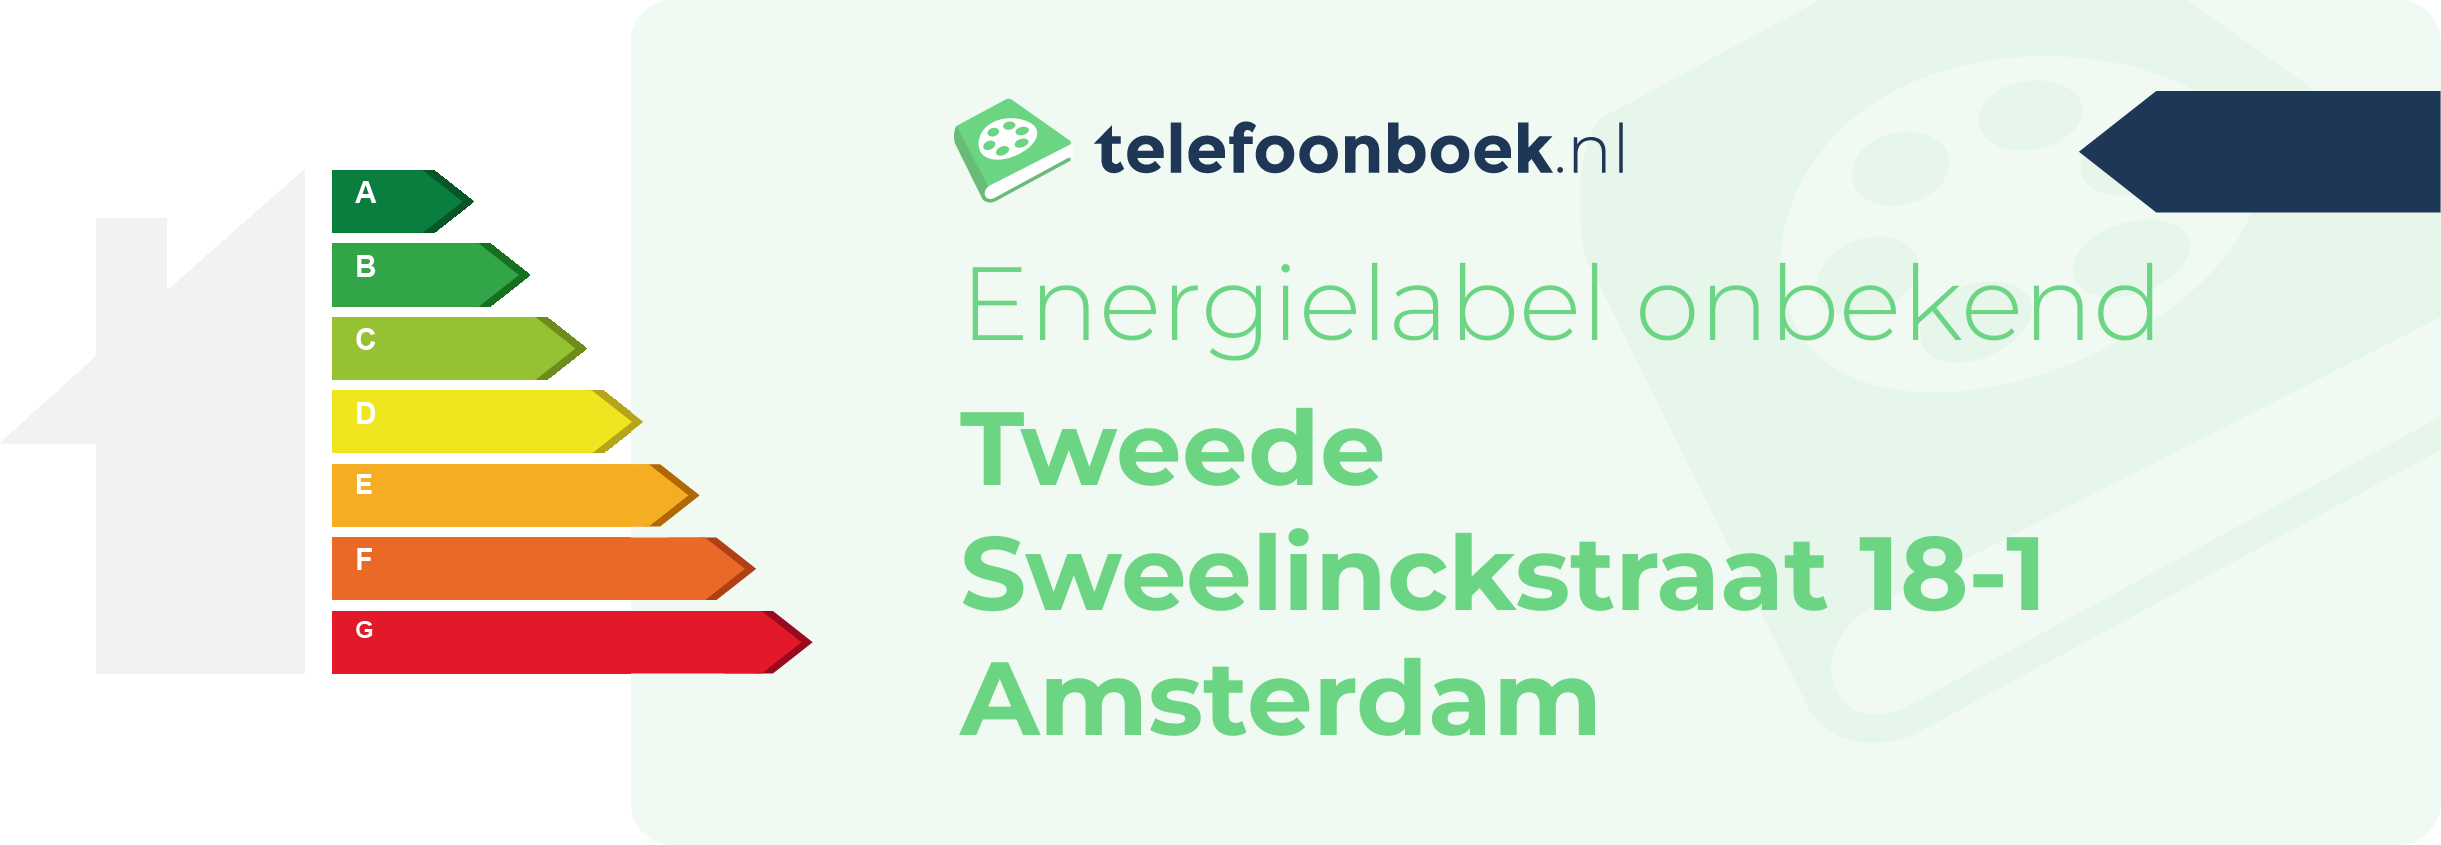 Energielabel Tweede Sweelinckstraat 18-1 Amsterdam